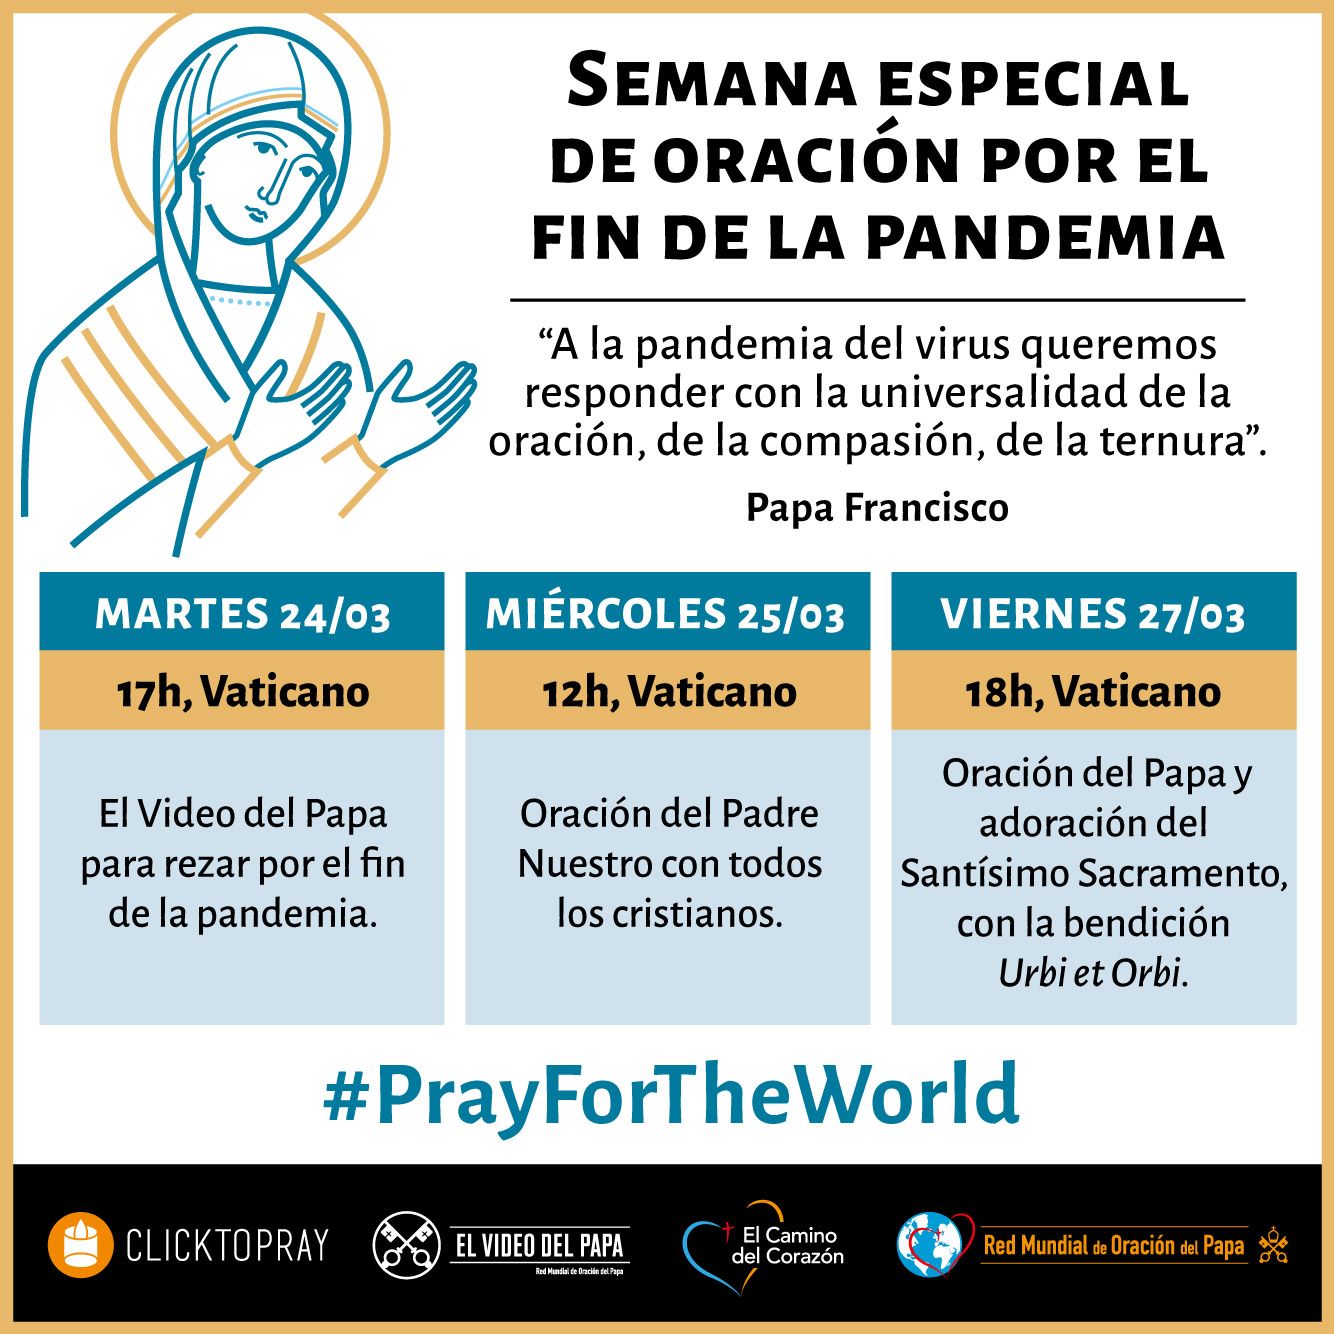 Semana especial de oración por el fin de la pandemia